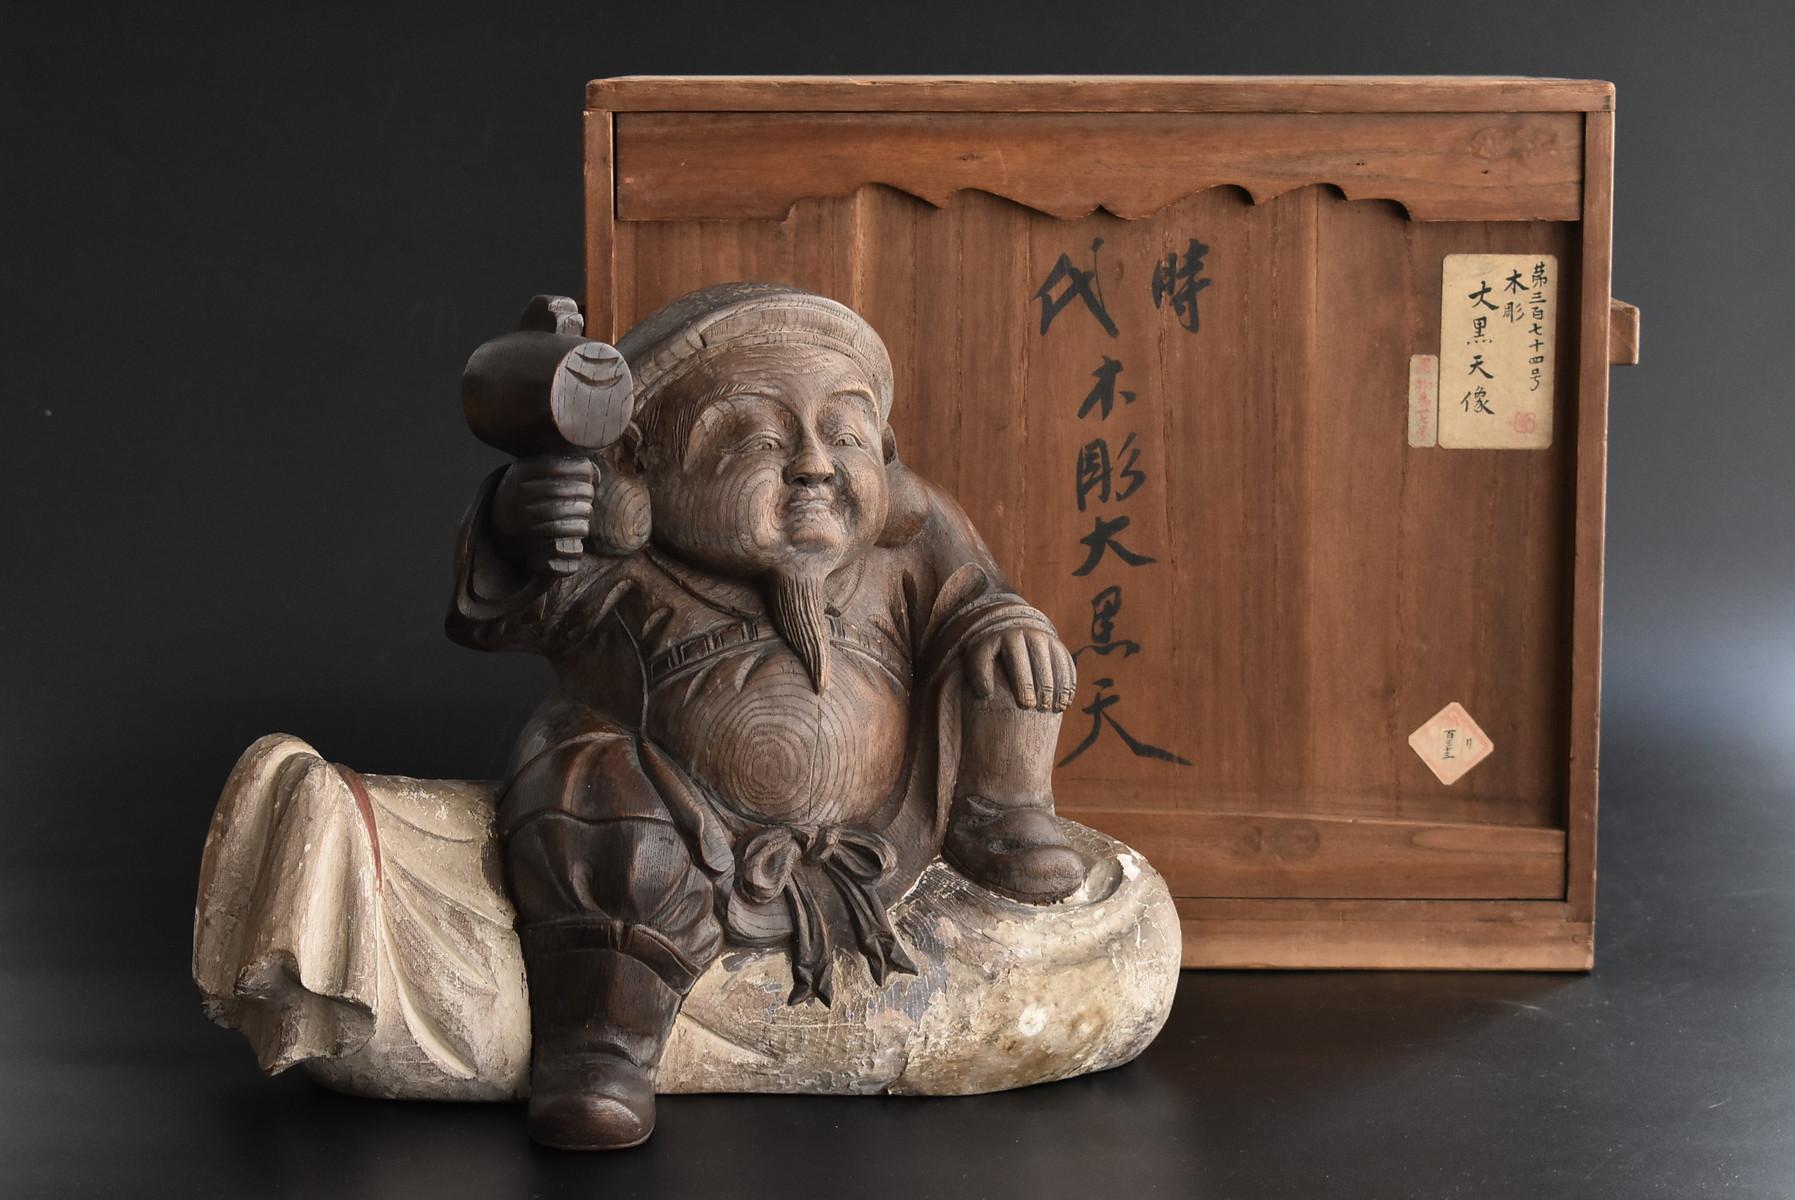 Old Japanese wooden Buddha Statue / Daikokuten 'Seven Lucky Gods' / Wood Carving 12